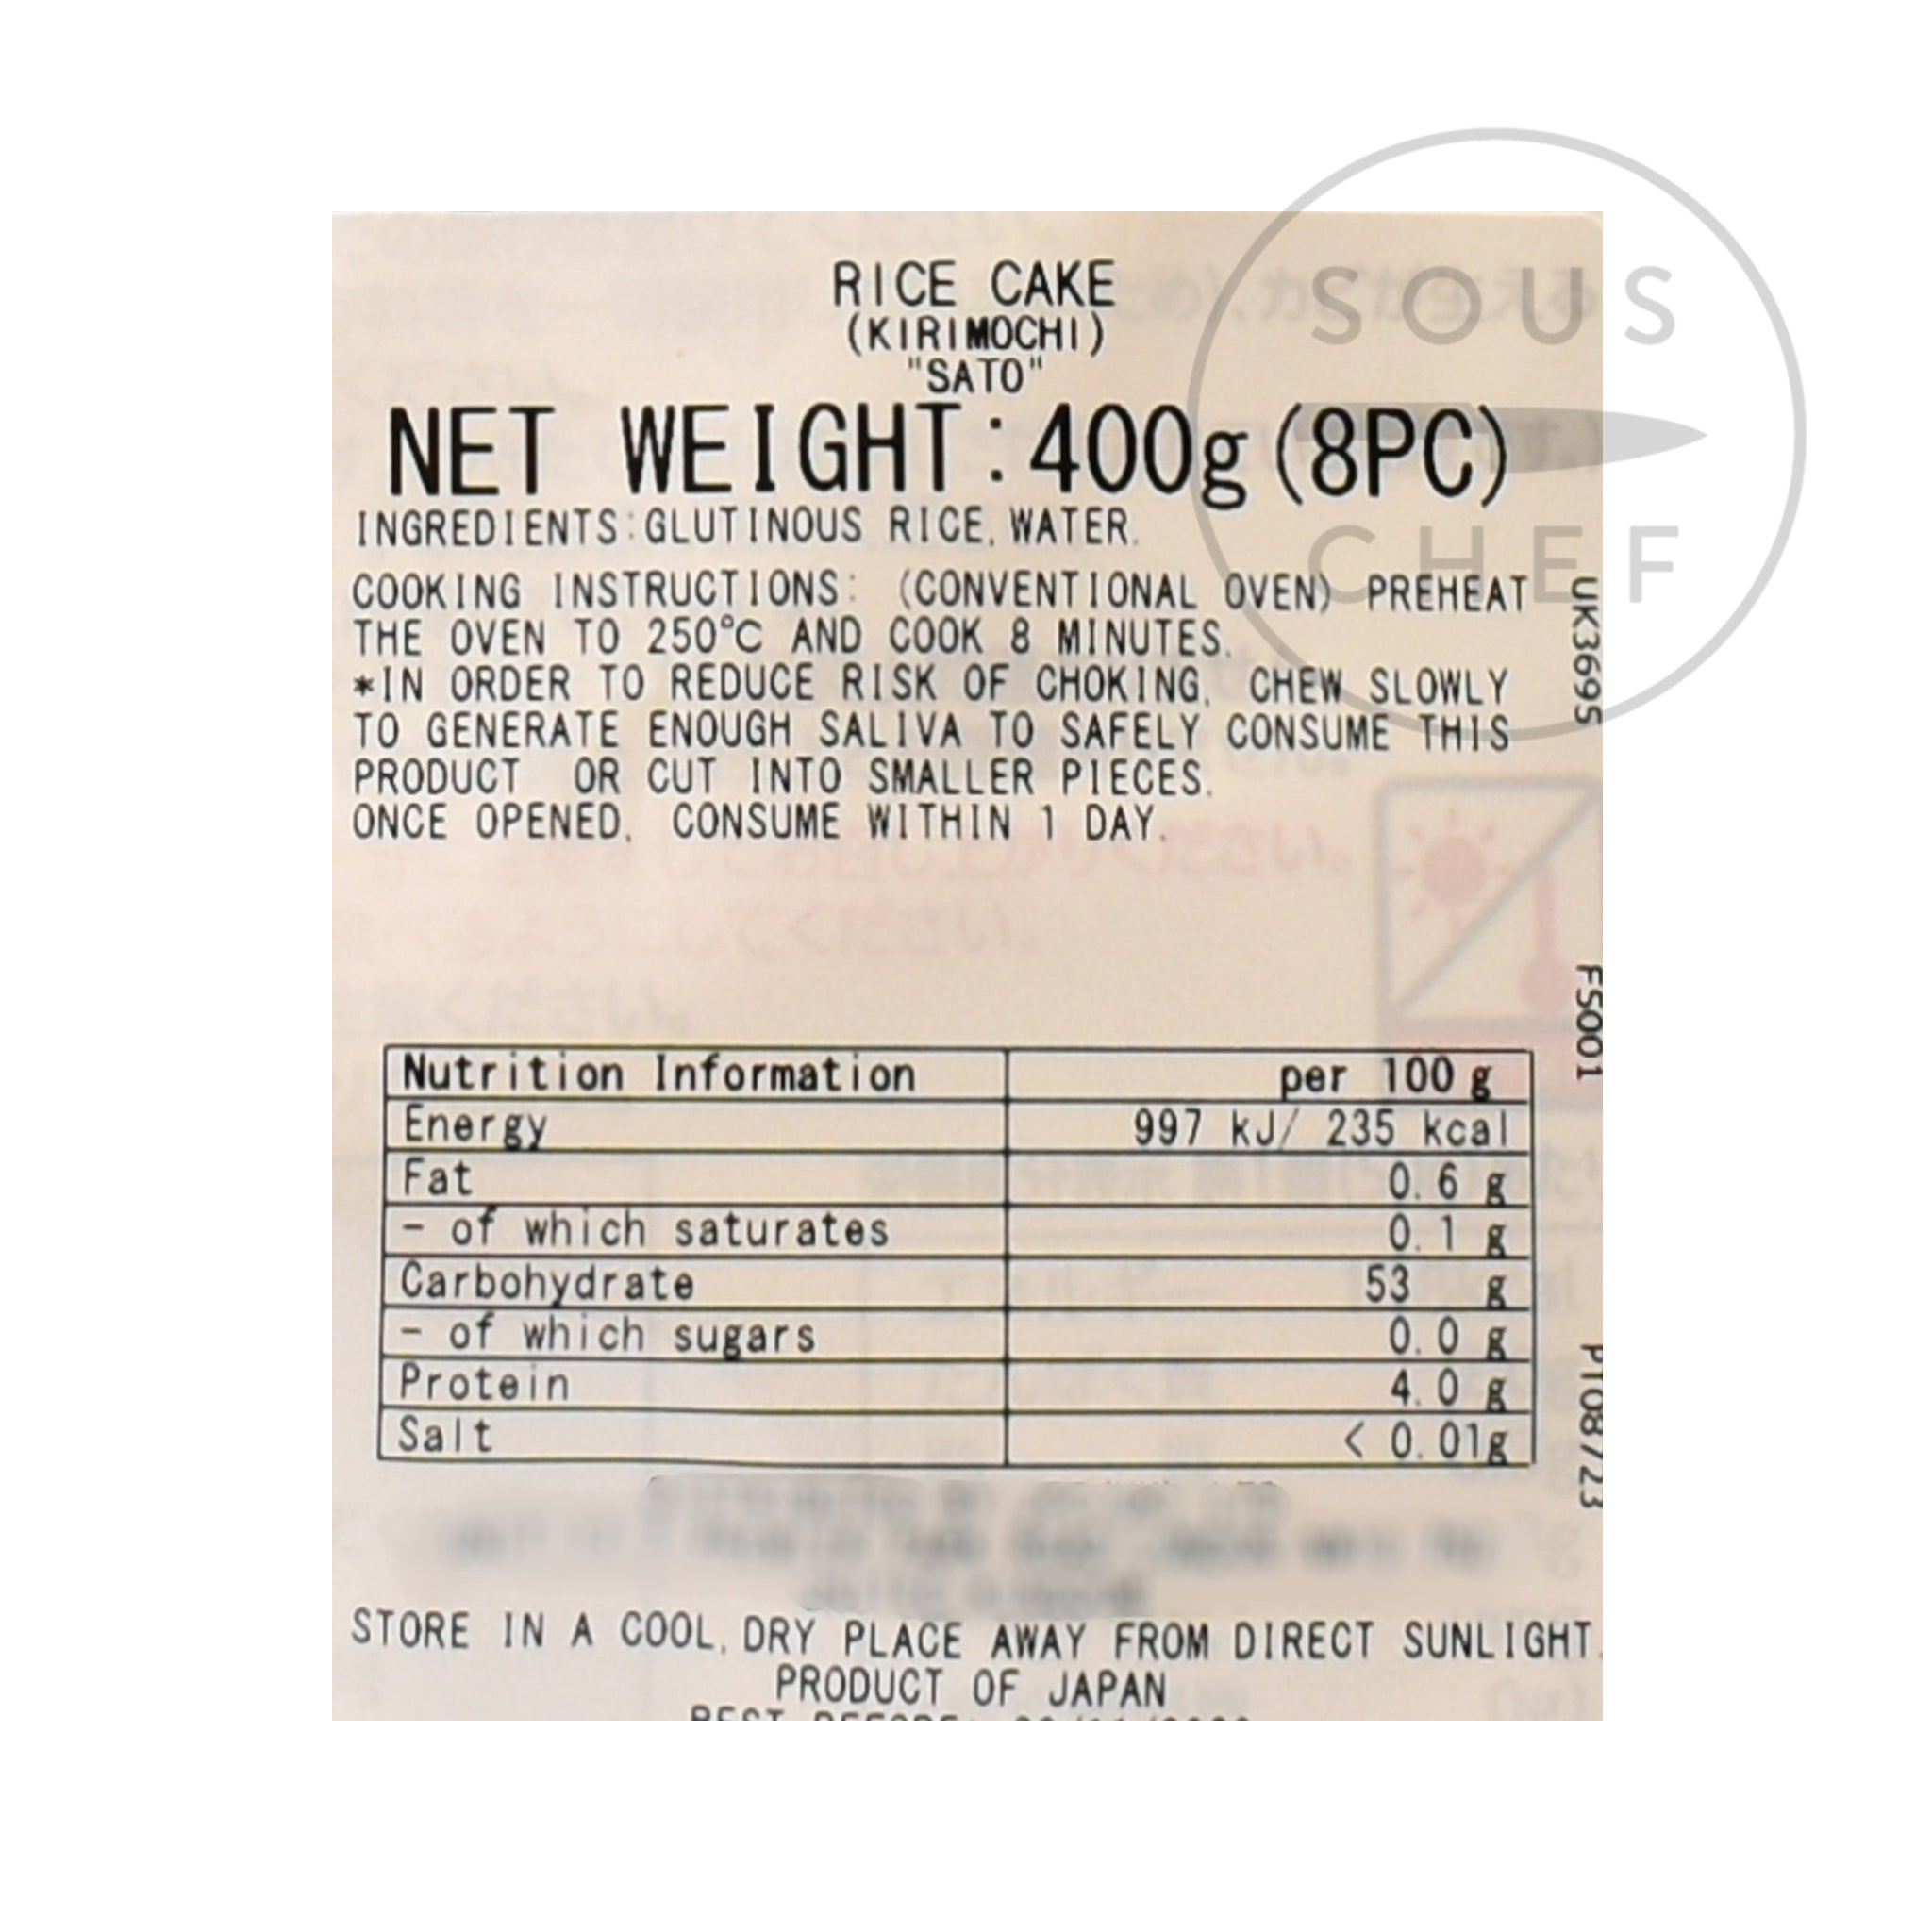 Kiri Mochi Rice Cake 400g nutritional information ingredients